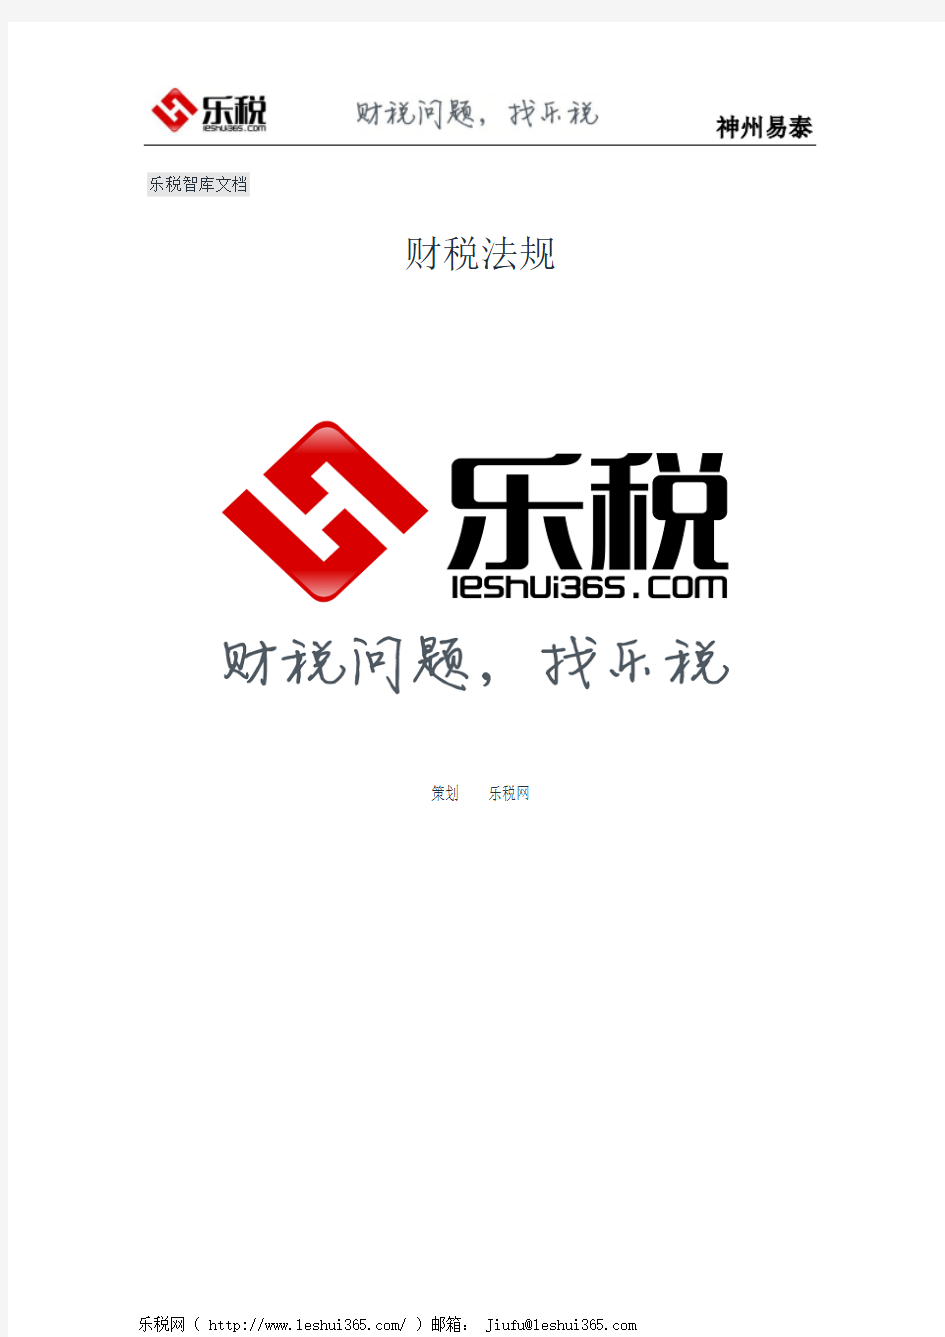 天津市国家税务局关于新版增值税电脑专用发票式样有关问题的通知